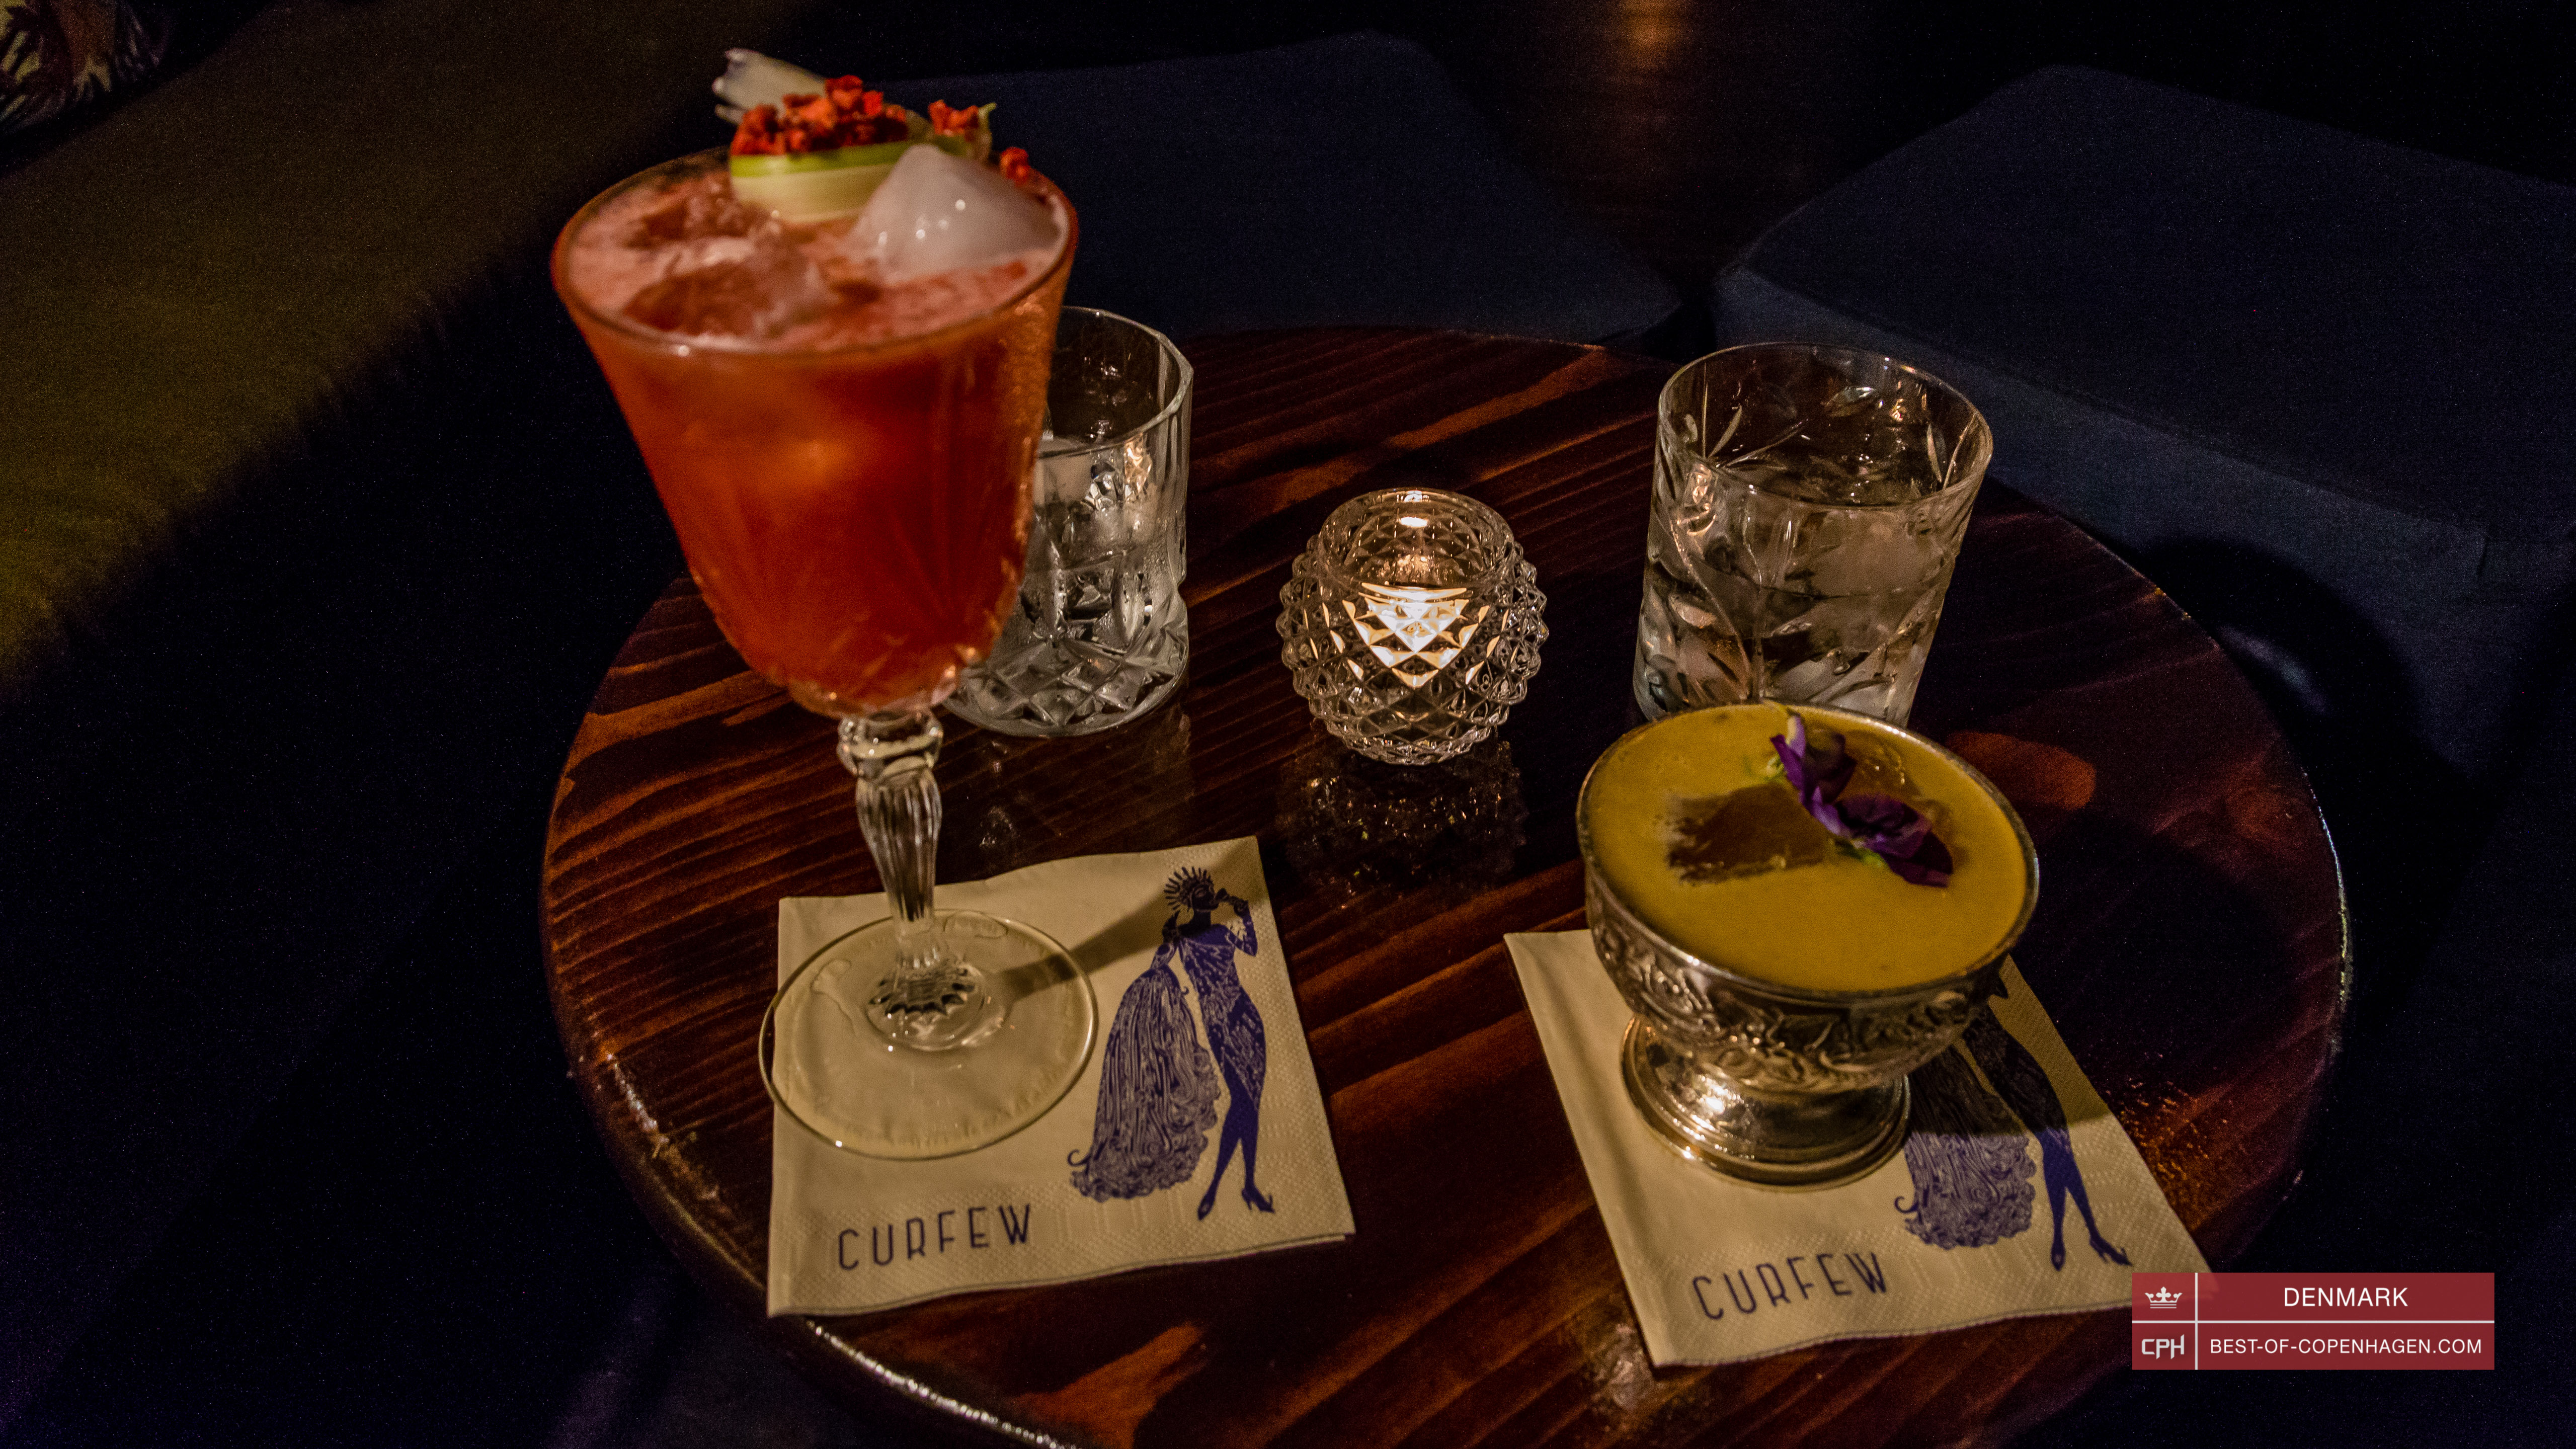 Cocktails at the bar Curfew, Copenhagen, Denmark